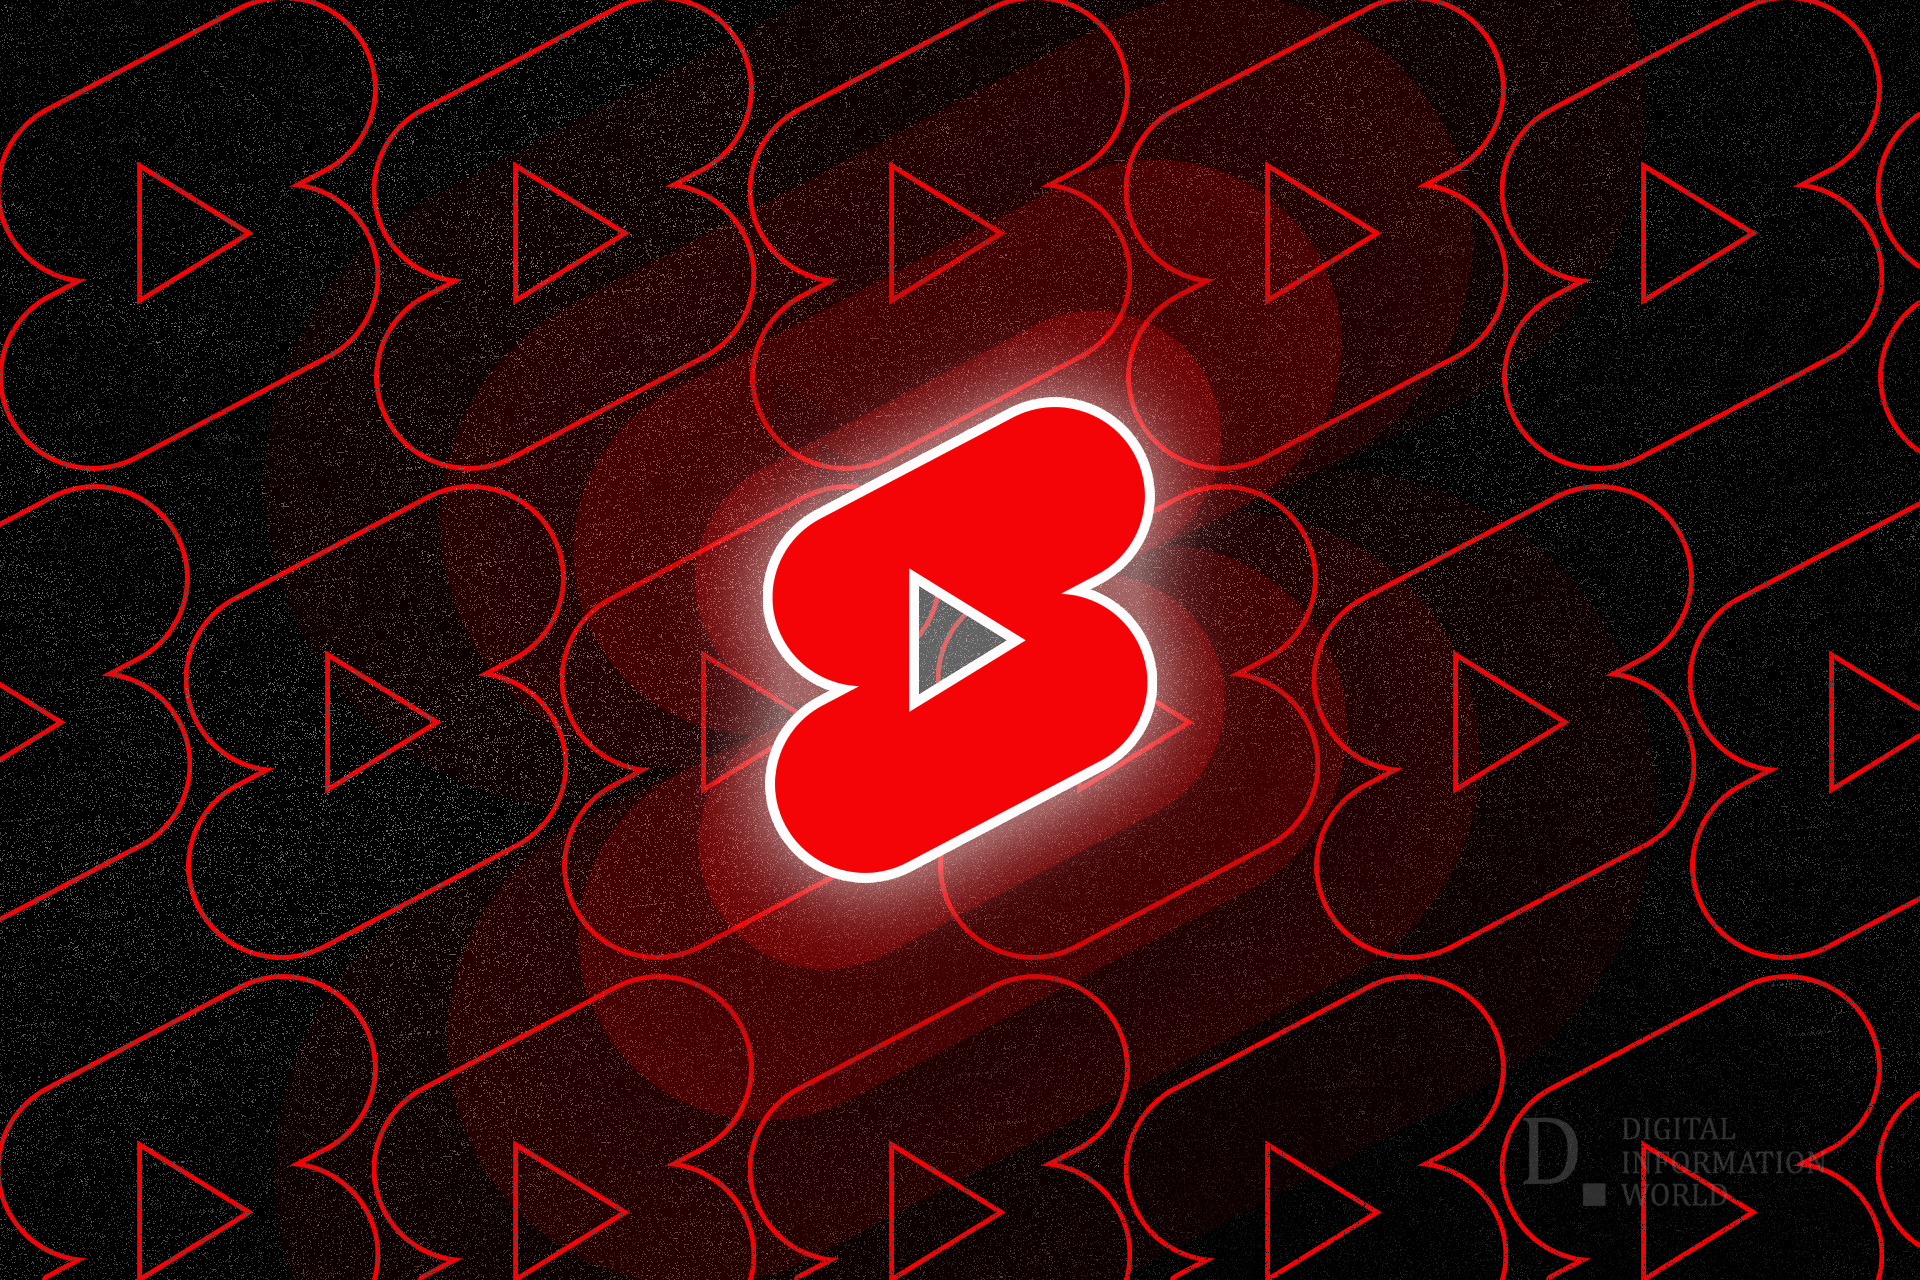 YouTube fornisce risposte a domande chiave con suggerimenti e trucchi di successo relativi ai cortometraggi / al mondo dell’informazione digitale